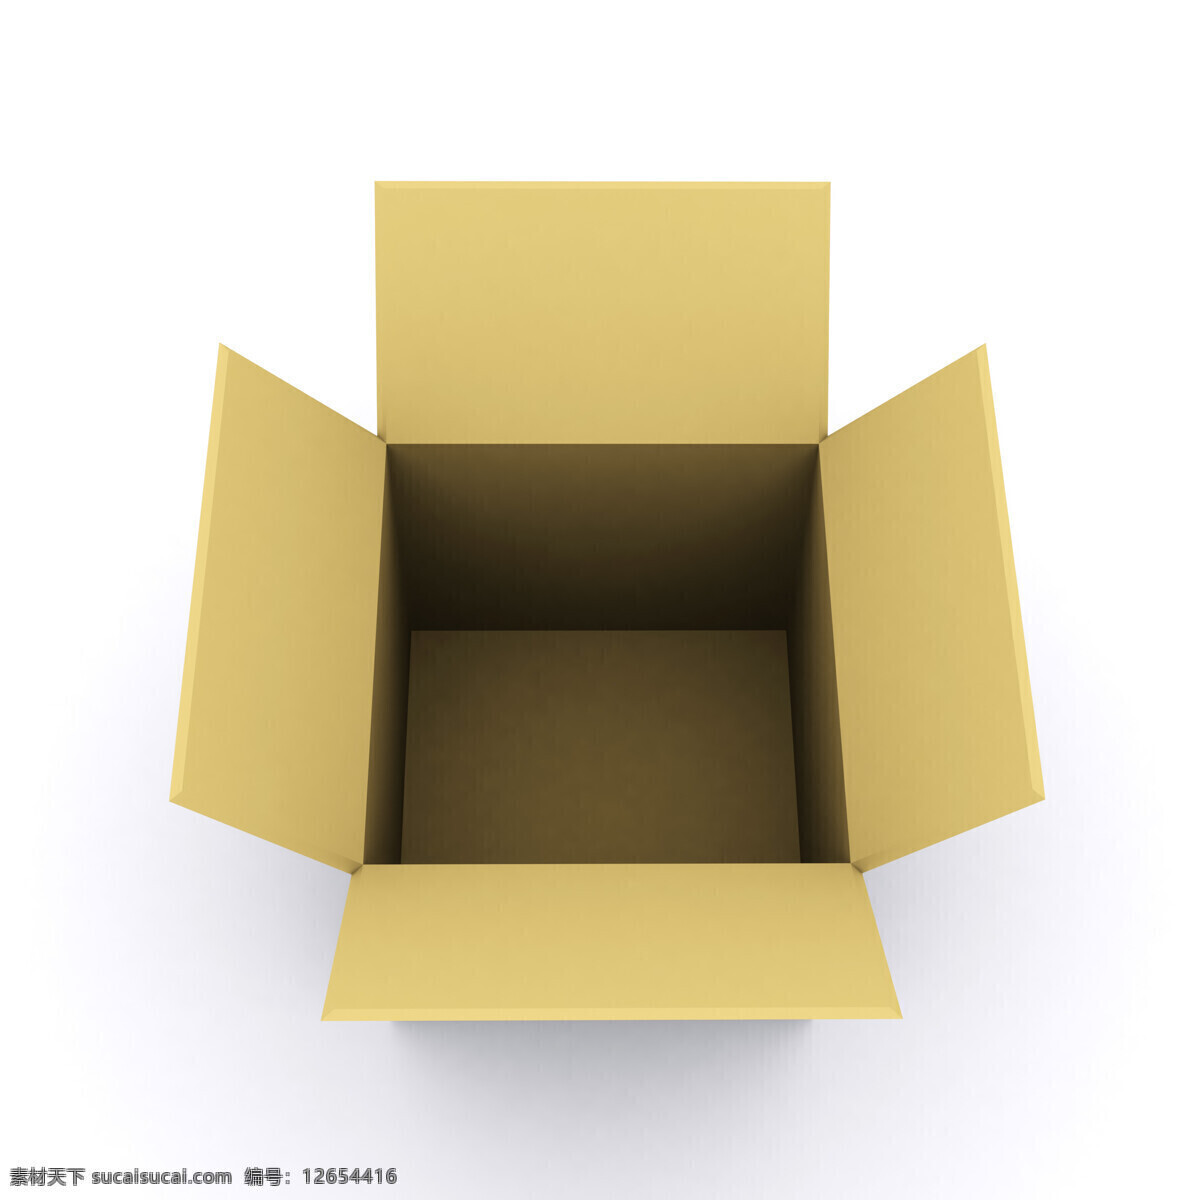 高清 包装 打开 包装盒 创意设计 高清素材 牛皮纸 纸盒 打开的盒子 空白纸盒